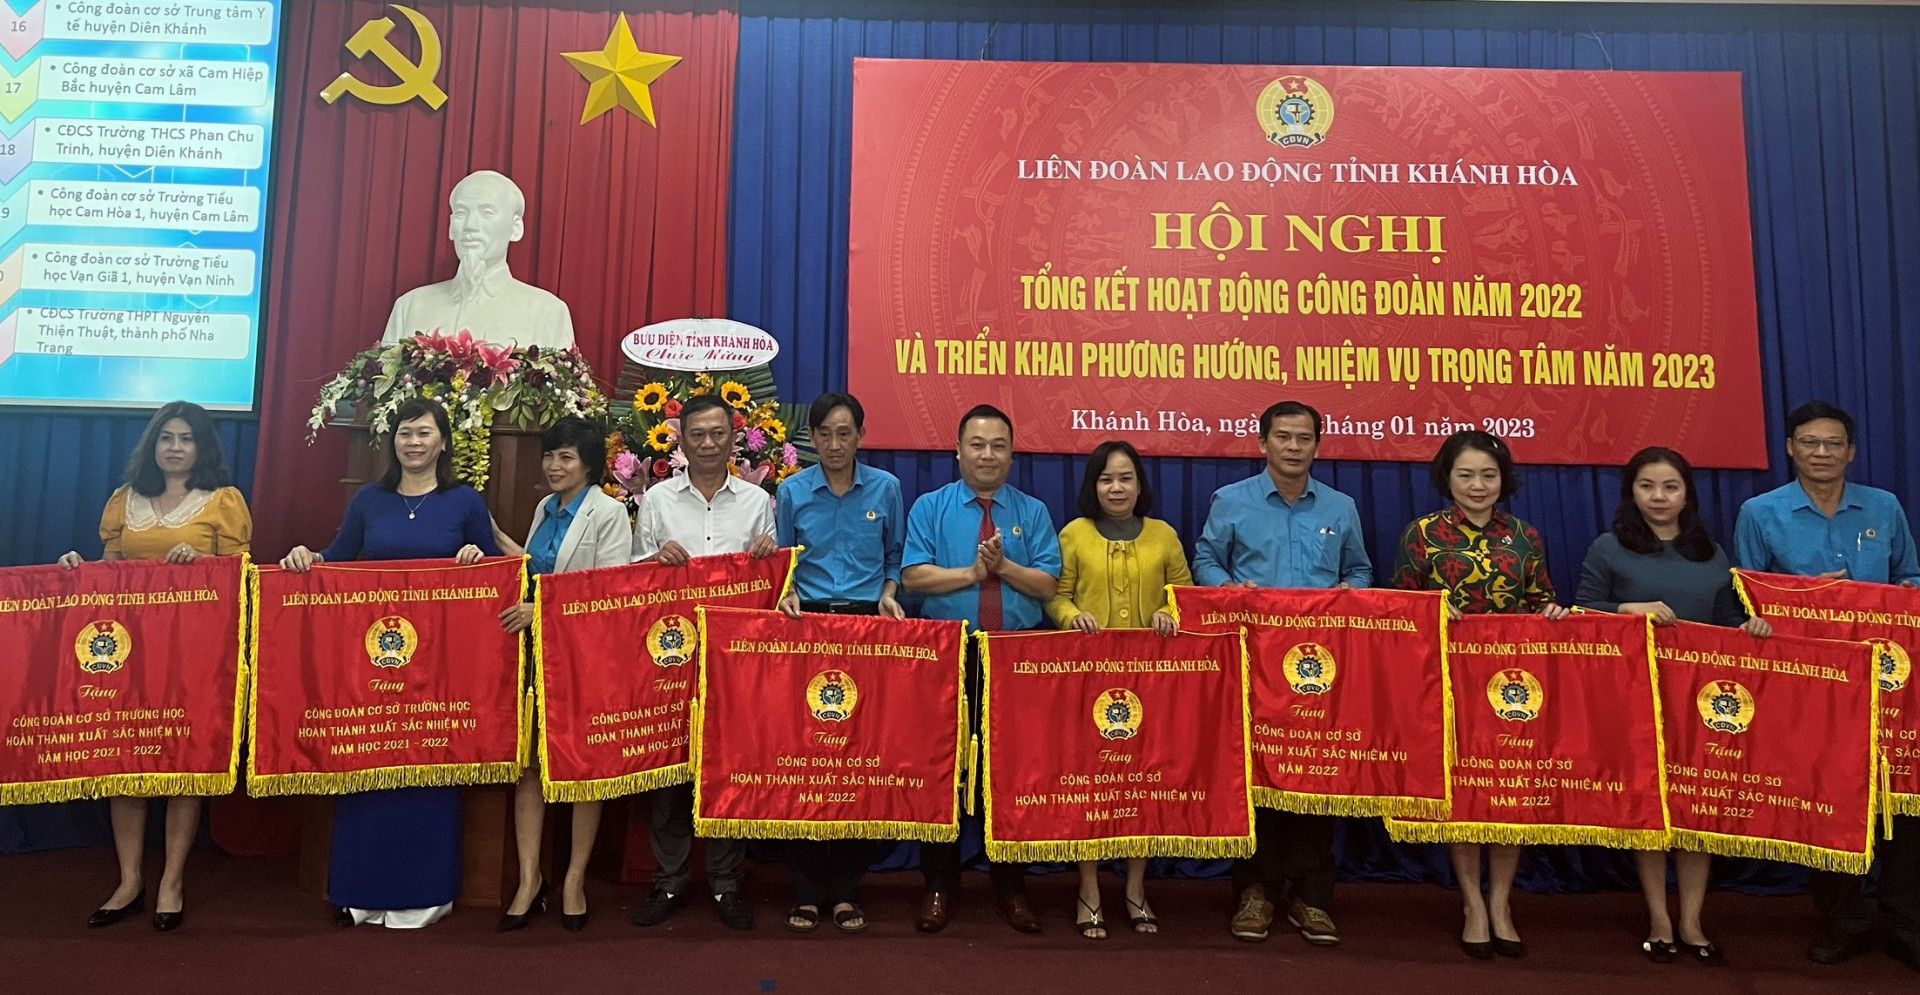 Lãnh đạo Liên đoàn Lao động tỉnh trao cờ thi đua xuất sắc cho các đơn vị.